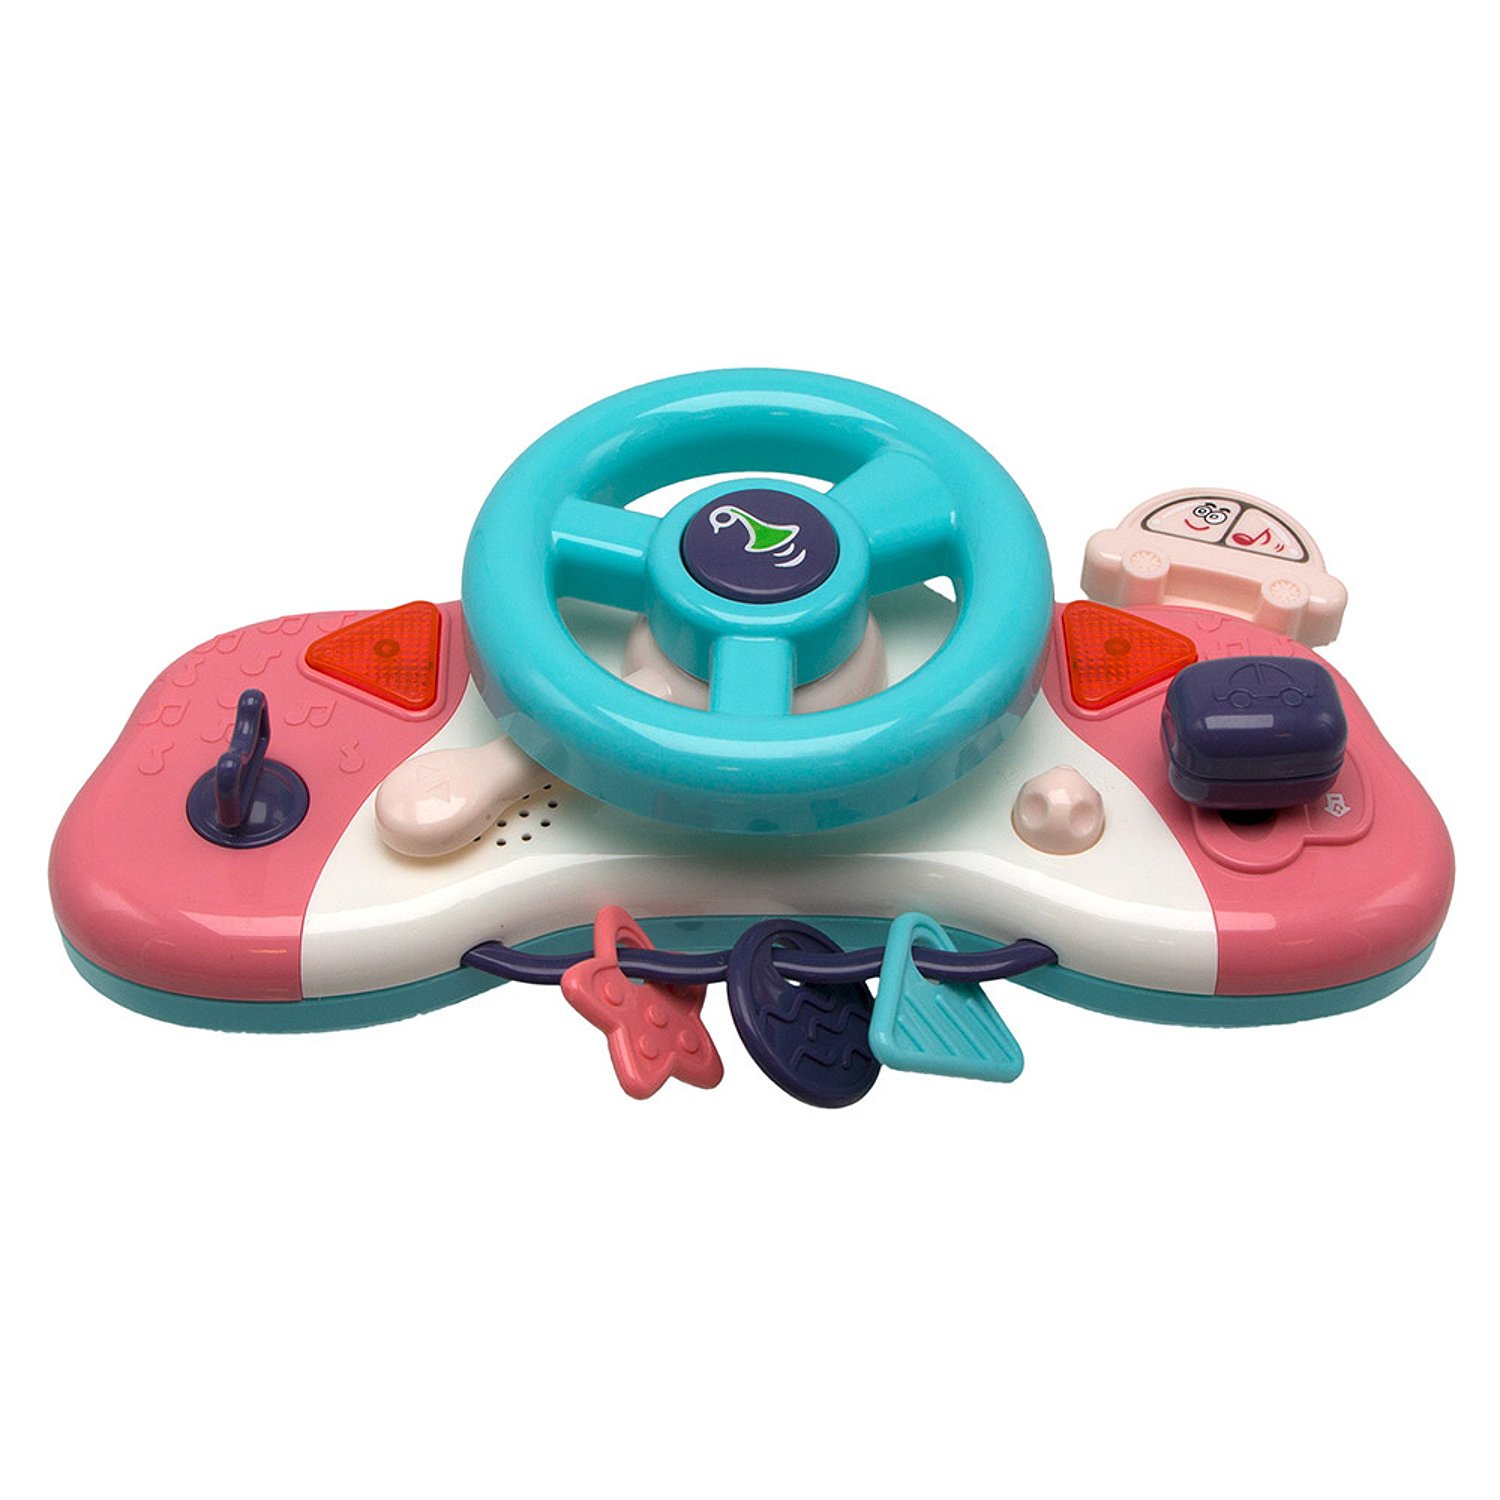 Интерактивная игрушка Bambini Музыкальный руль 100022 интерактивная игрушка bambini музыкальный руль 100022